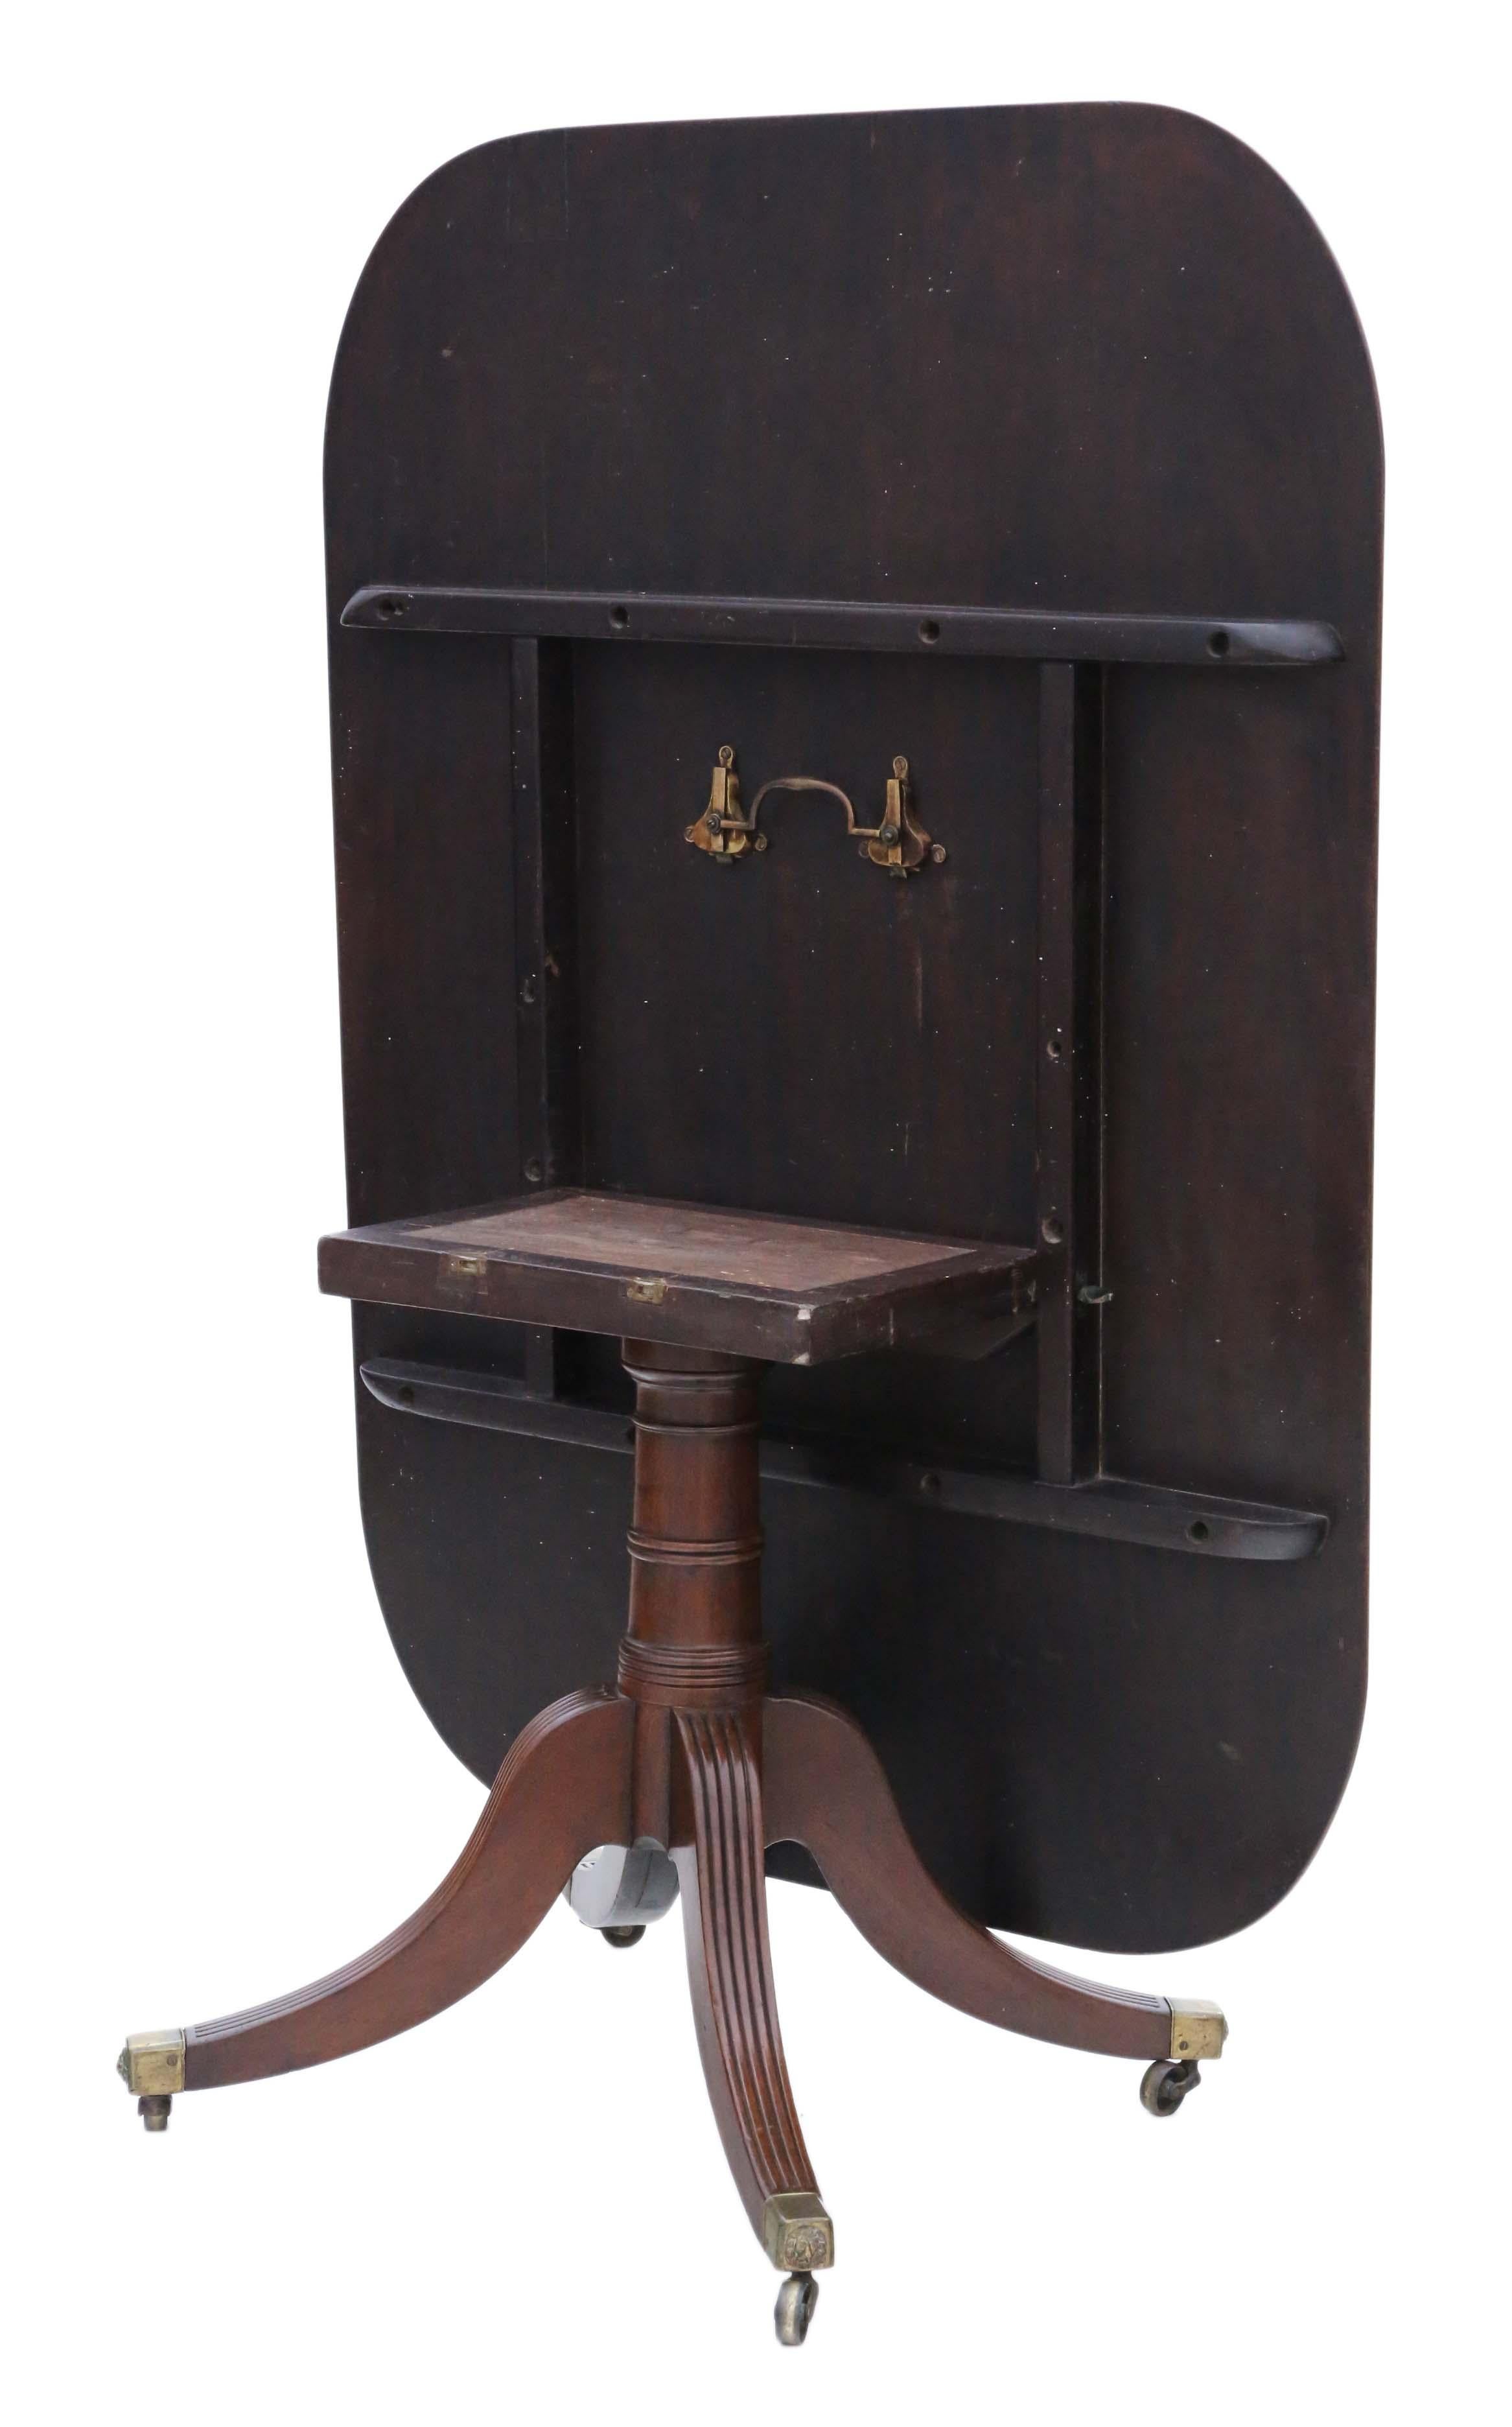 Antiker hochwertiger Regency-Mahagoni-Tisch aus dem Jahr 1825 mit kippbarer Tischplatte für Toilette, Zentrum oder Frühstück.

Solide, schwer und ohne lose Verbindungen. Schöner Kanonenrohr-Sockel.

Keine losen Fugen oder Holzwürmer.

Große